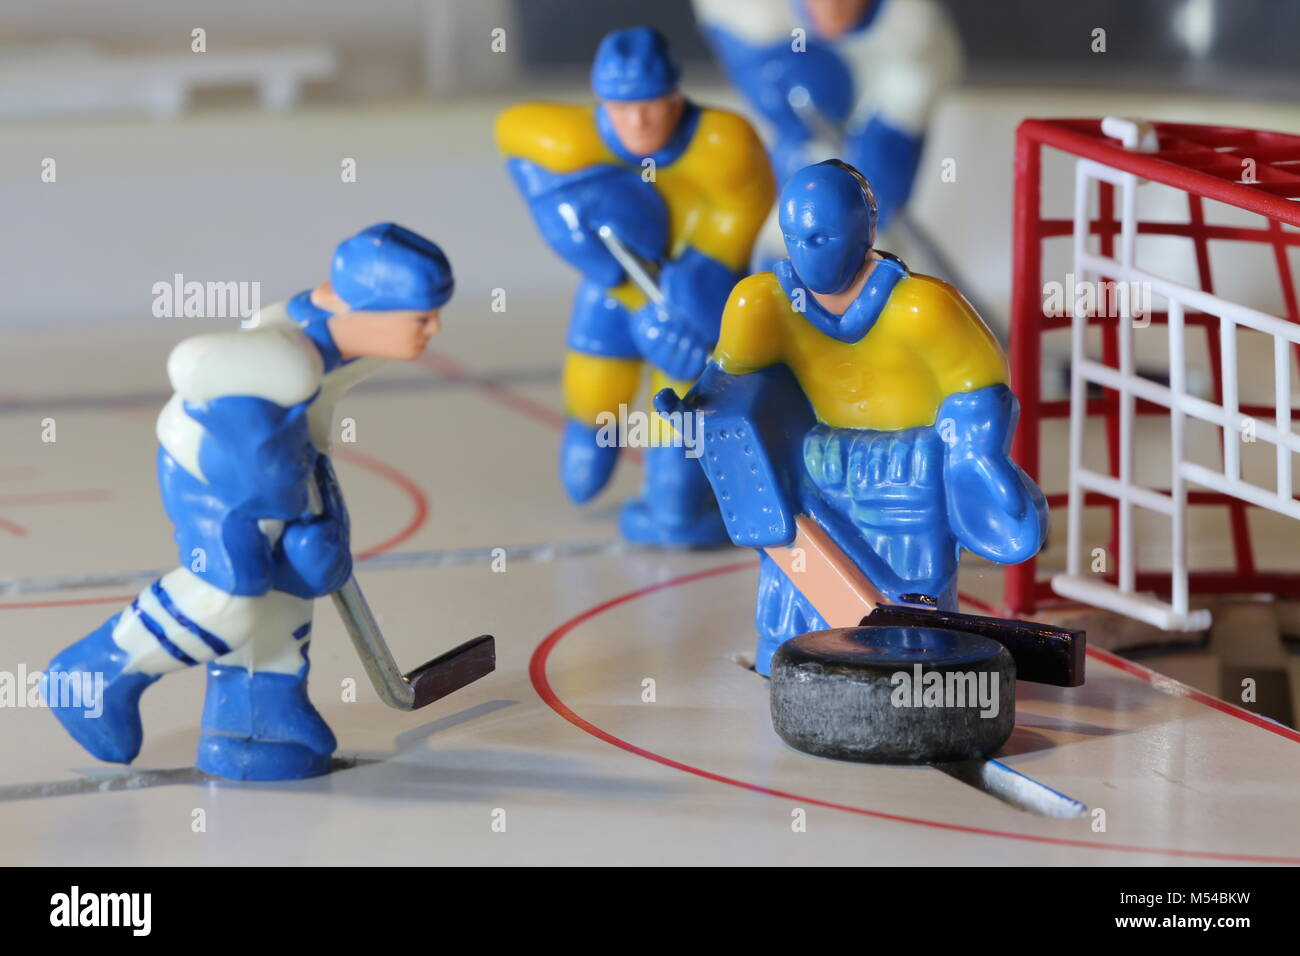 ice hockey attack Stock Photo